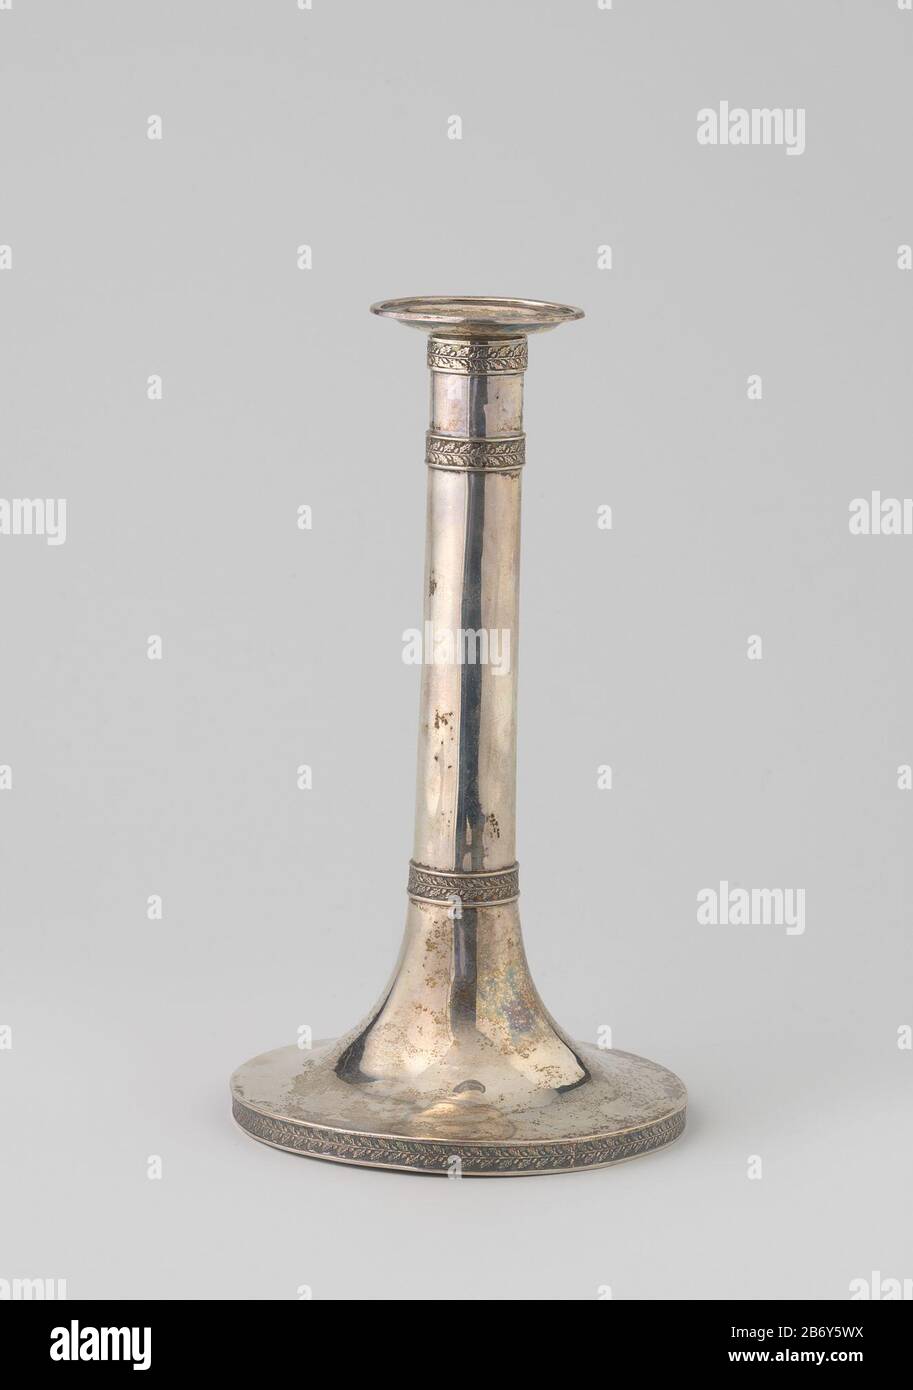 (A en B) van zilver met cilindervormige stam op hoge ronde voet Versierd met randen met eikeblad Kandelaar zilver. De ronde, hoge voet gaat over in de cilindervormige stam. Versierd